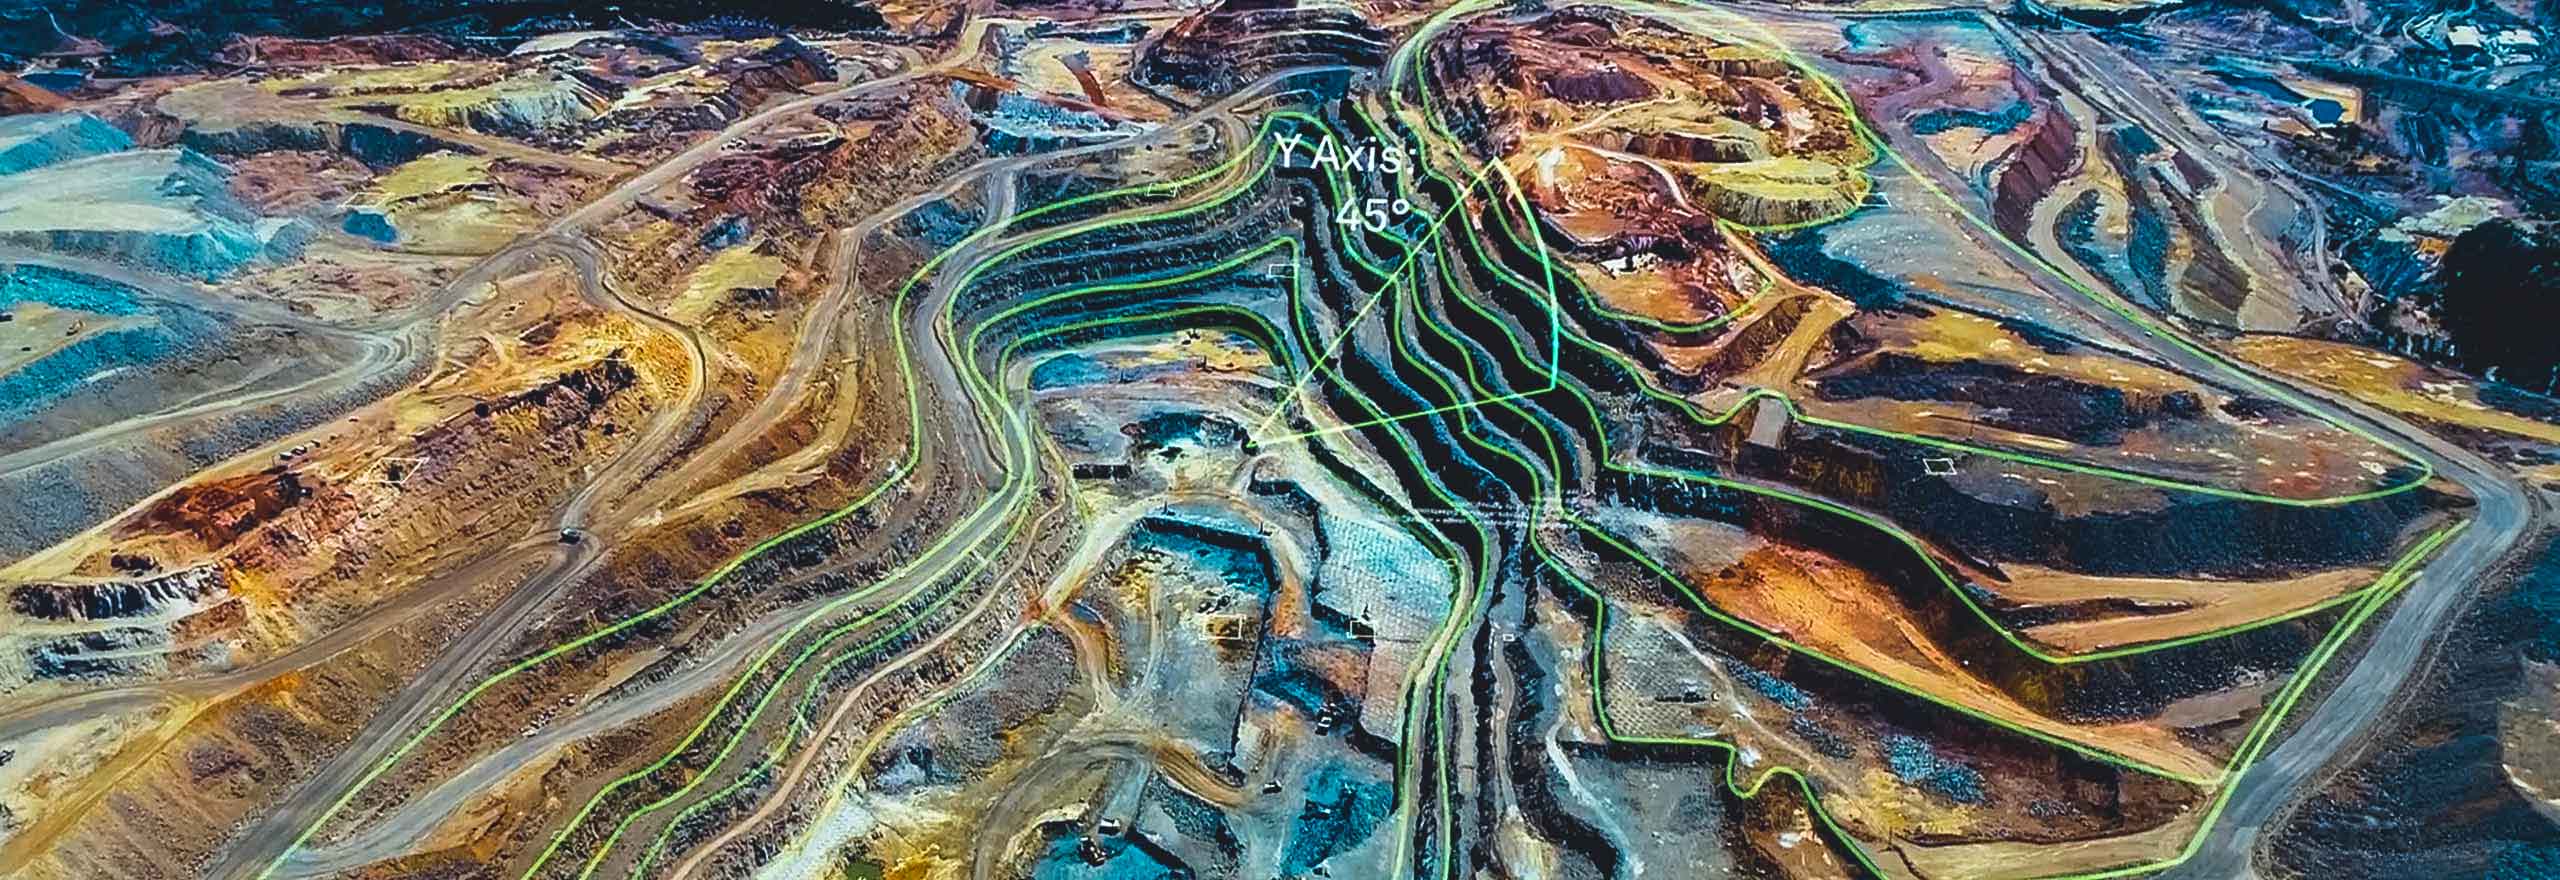 Una vista aerea di una miniera sovrapposta a elementi digitali che rappresentano l'analisi